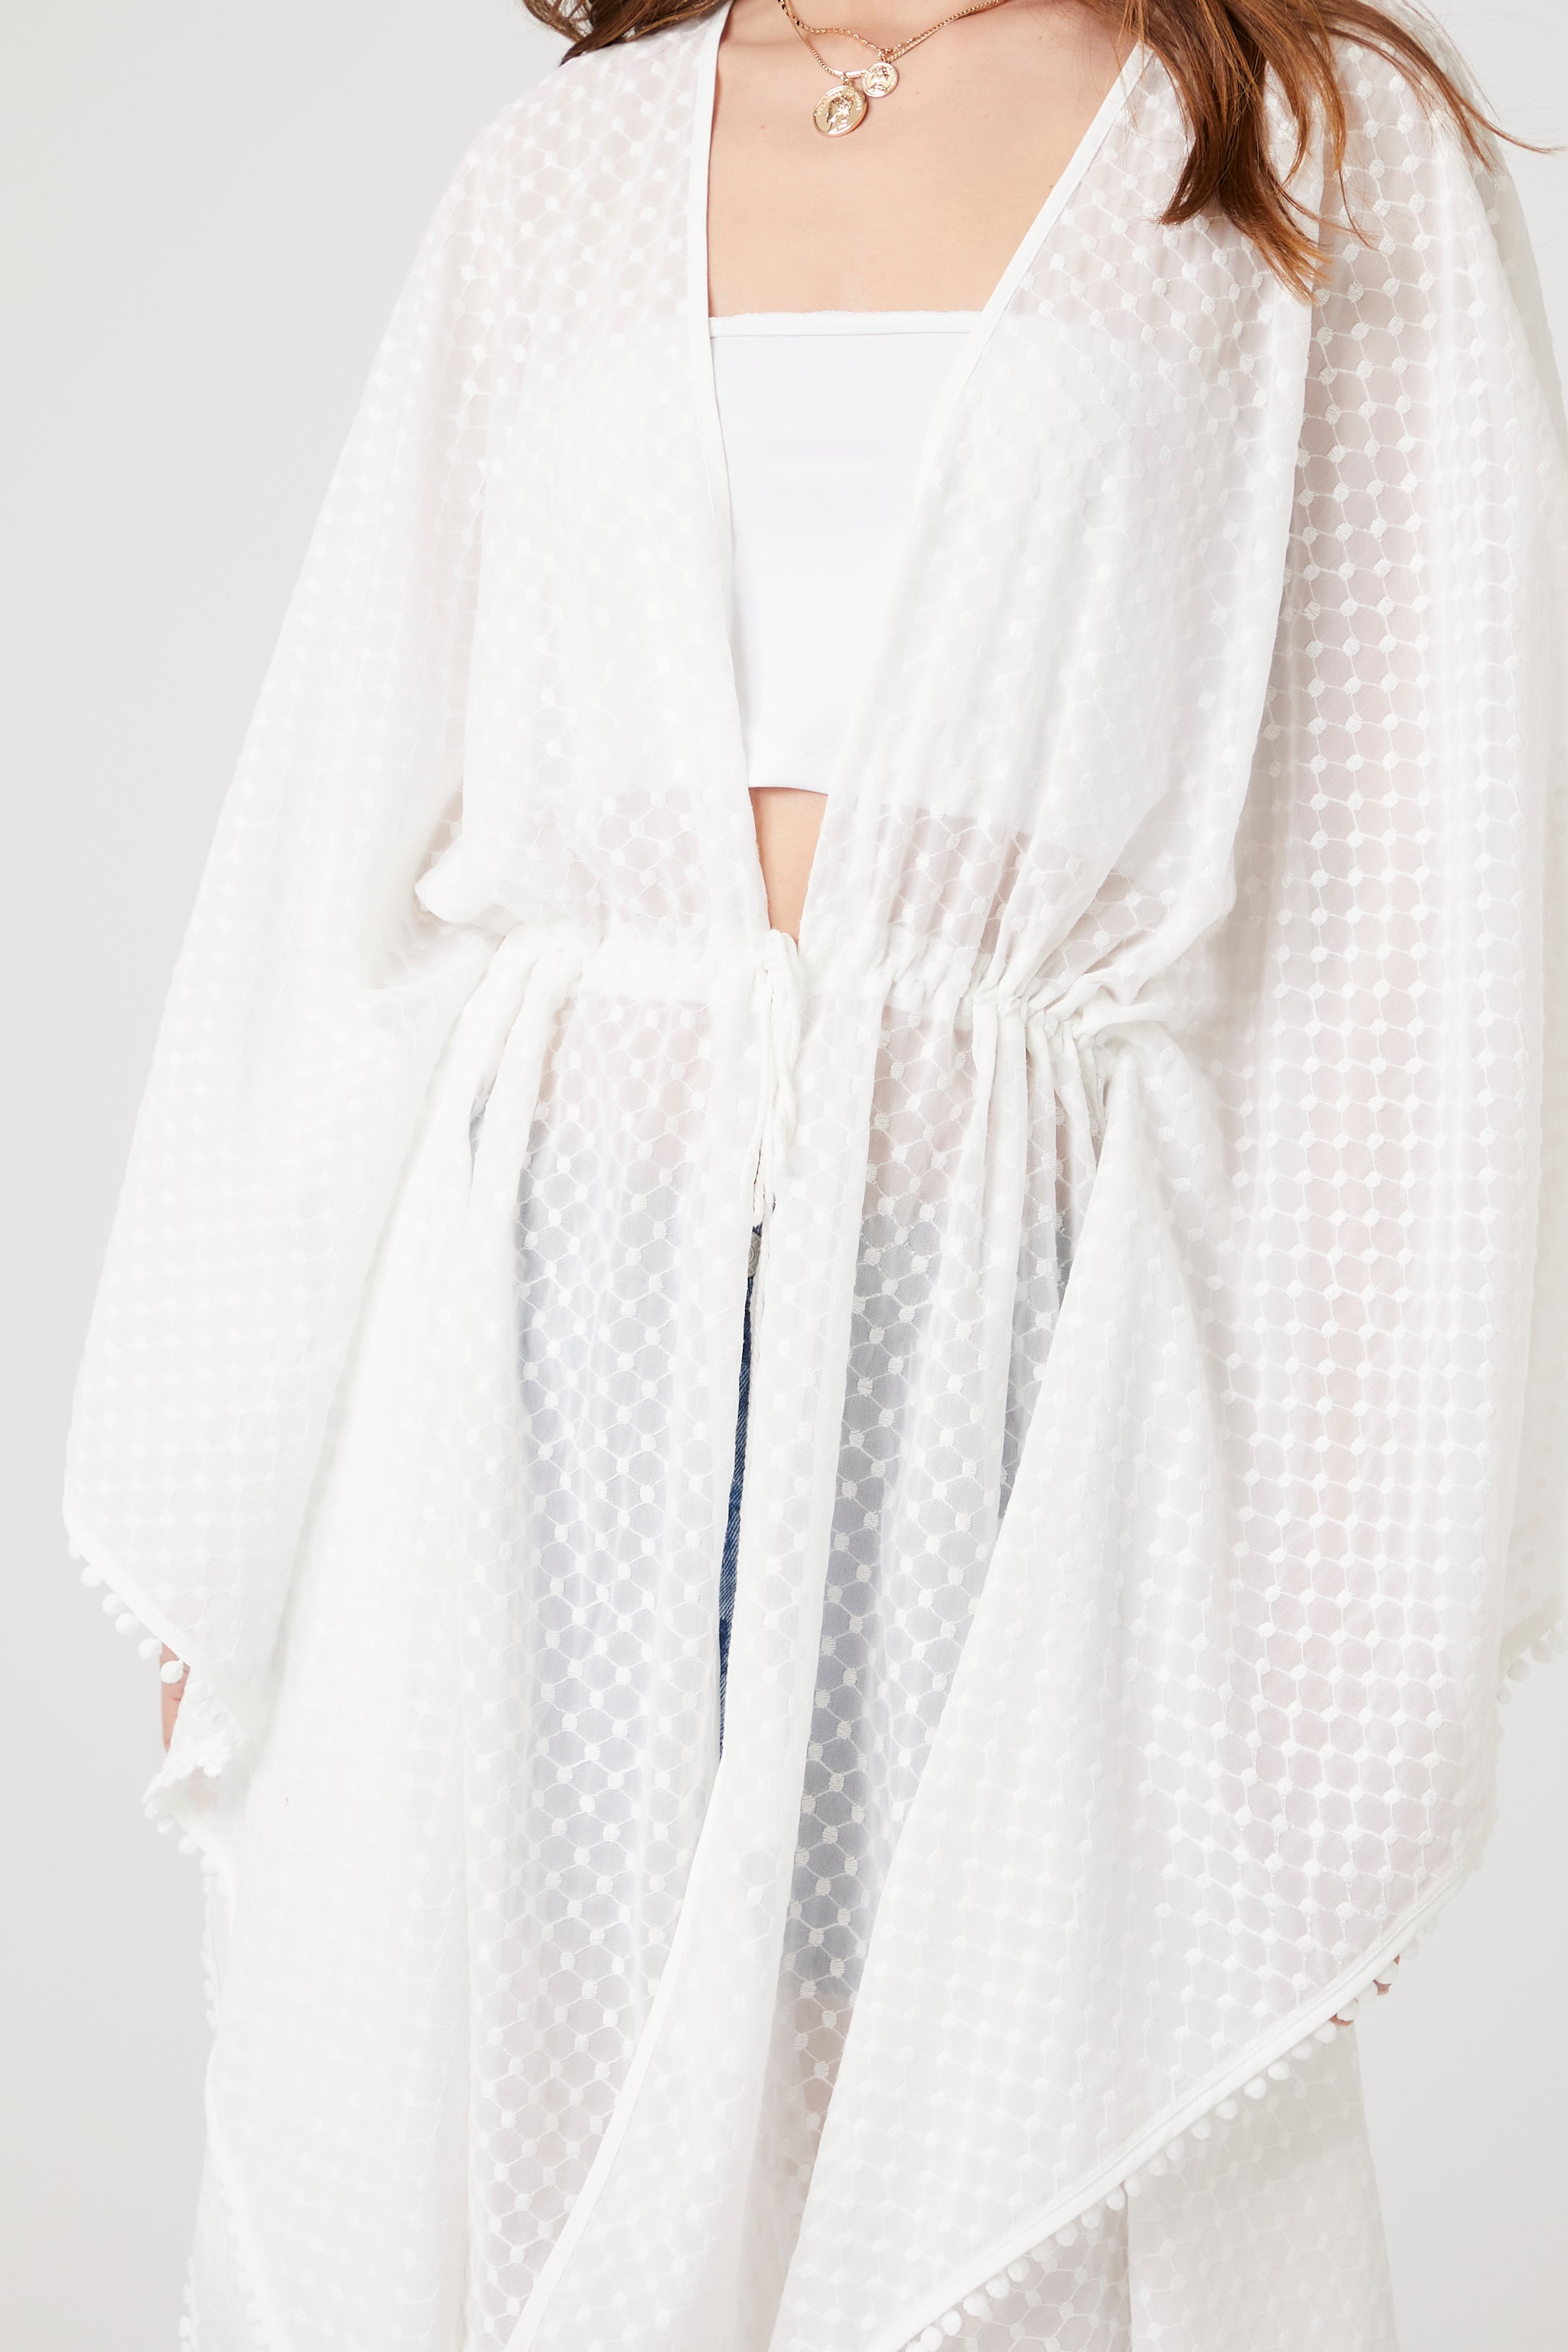 White Dotted Chiffon Kimono 2